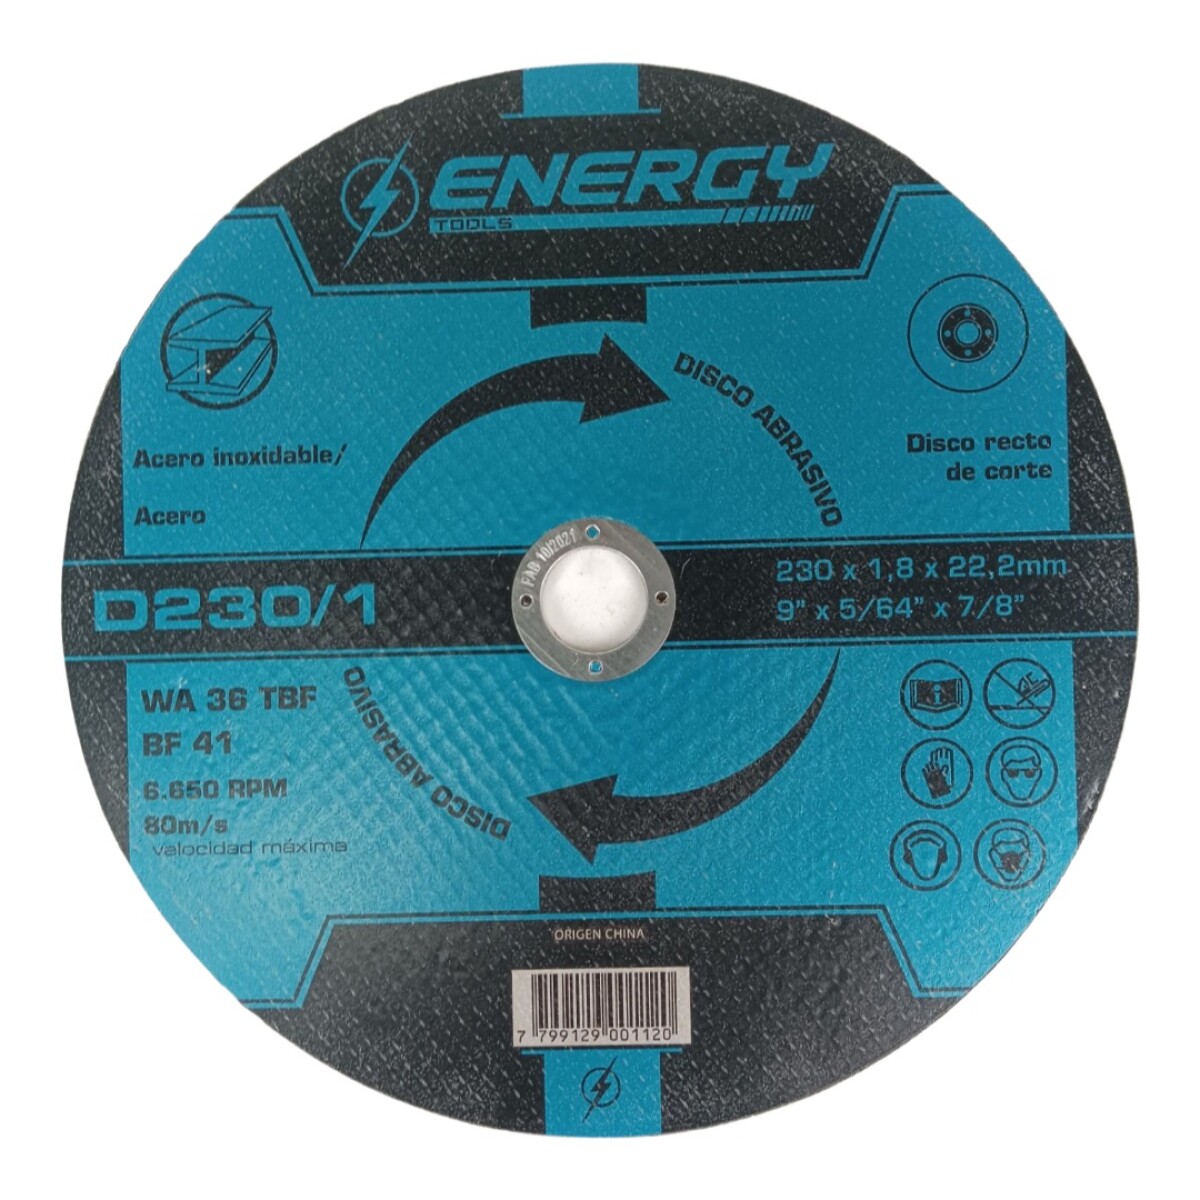 Disco Energy Corte Acero/A.Inox 9" D230/1.- 